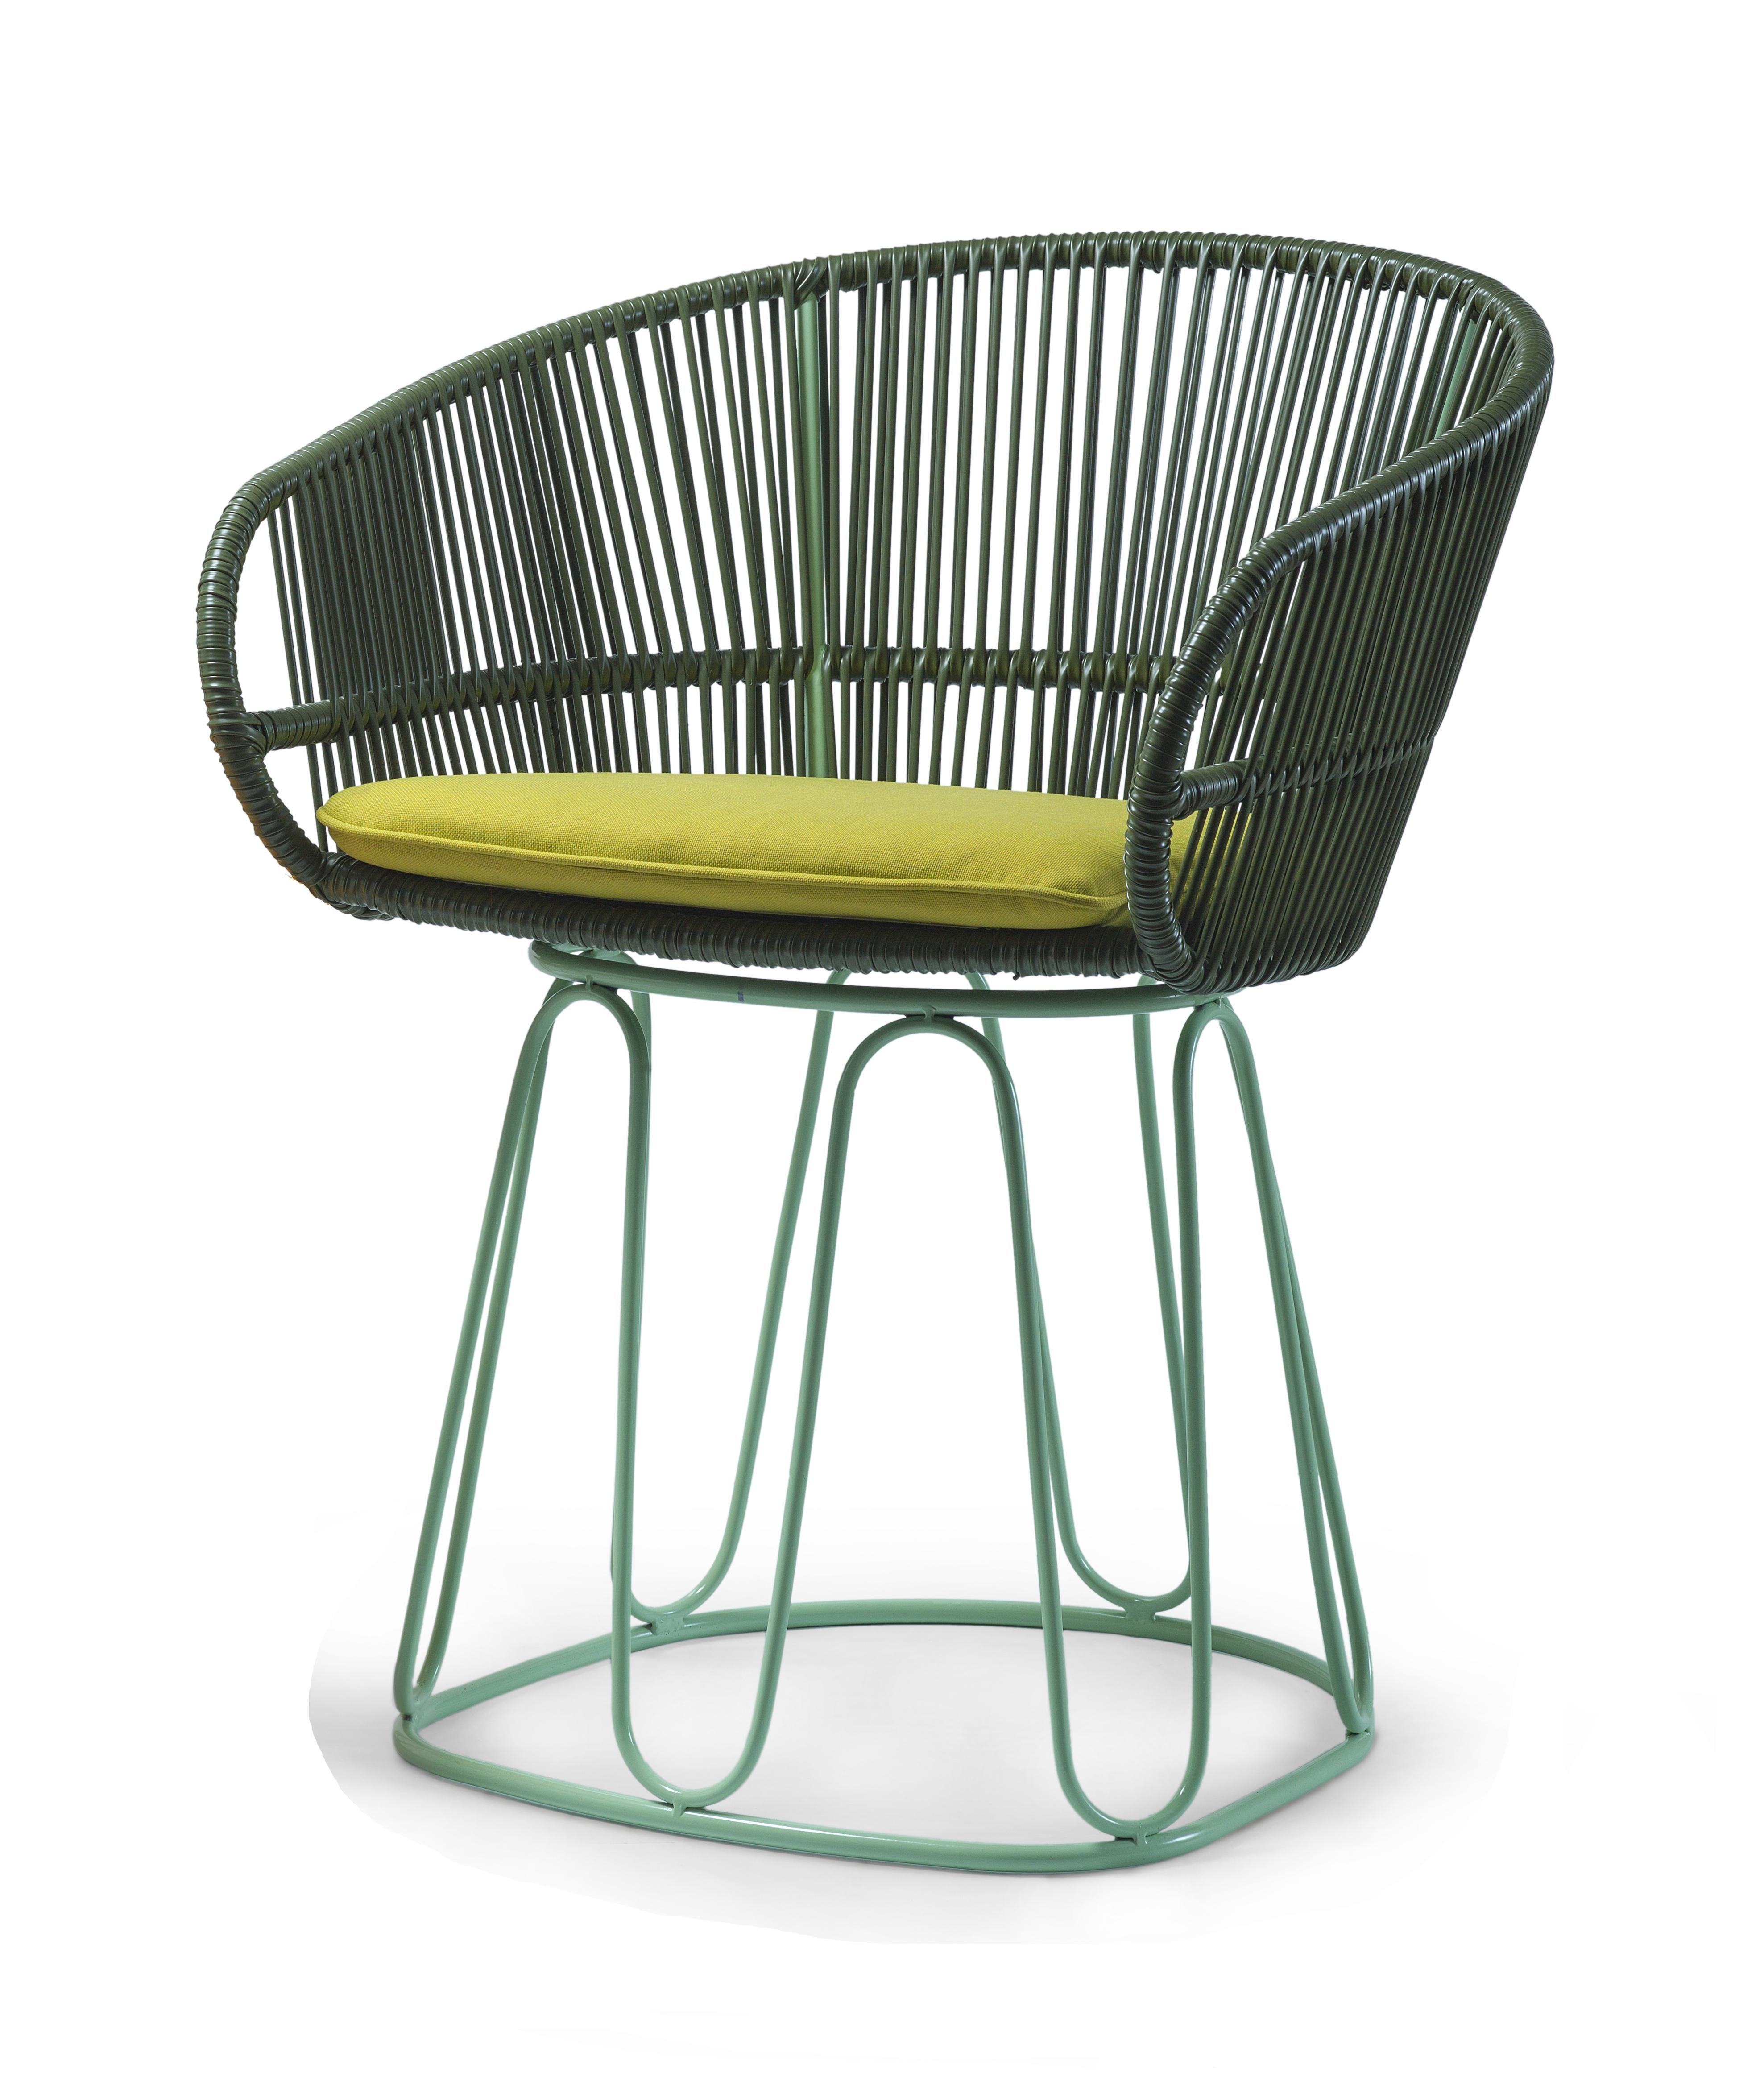 Chaise de salle à manger Olive Circo de Sebastian Herkner
MATERIAL : tube d'acier galvanisé et revêtu de poudre. Cordes en PVC.
Technique : fabriqué à partir de plastique recyclé. Tissé par des artisans locaux en Colombie. 
Dimensions : L 61,5 x